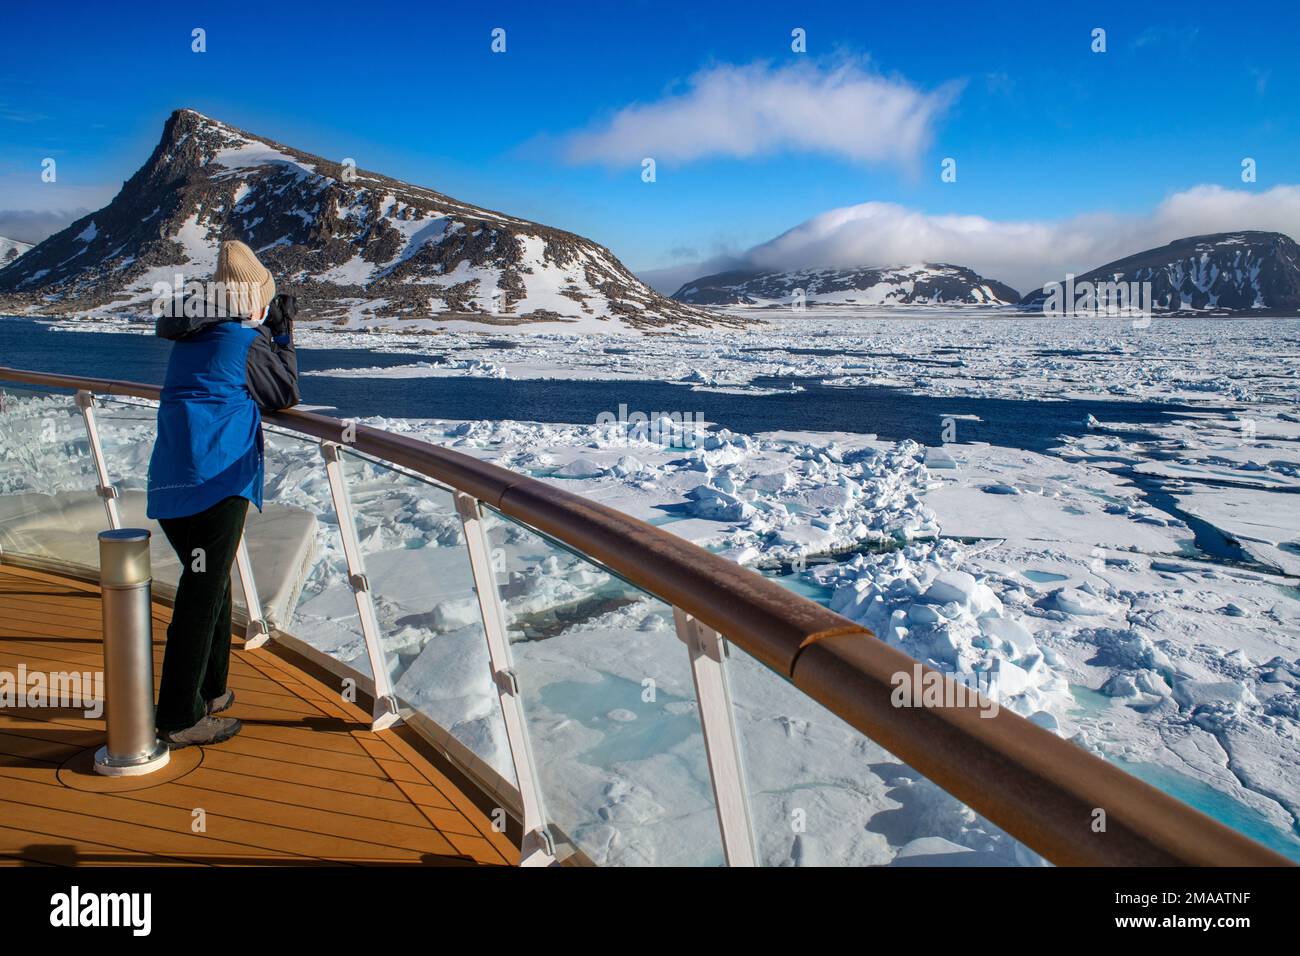 Tourisme a pris des photos dans le pont principal du navire de croisière Greg Mortimer dans l'archipel de Svalbard, en Norvège arctique. Banque D'Images